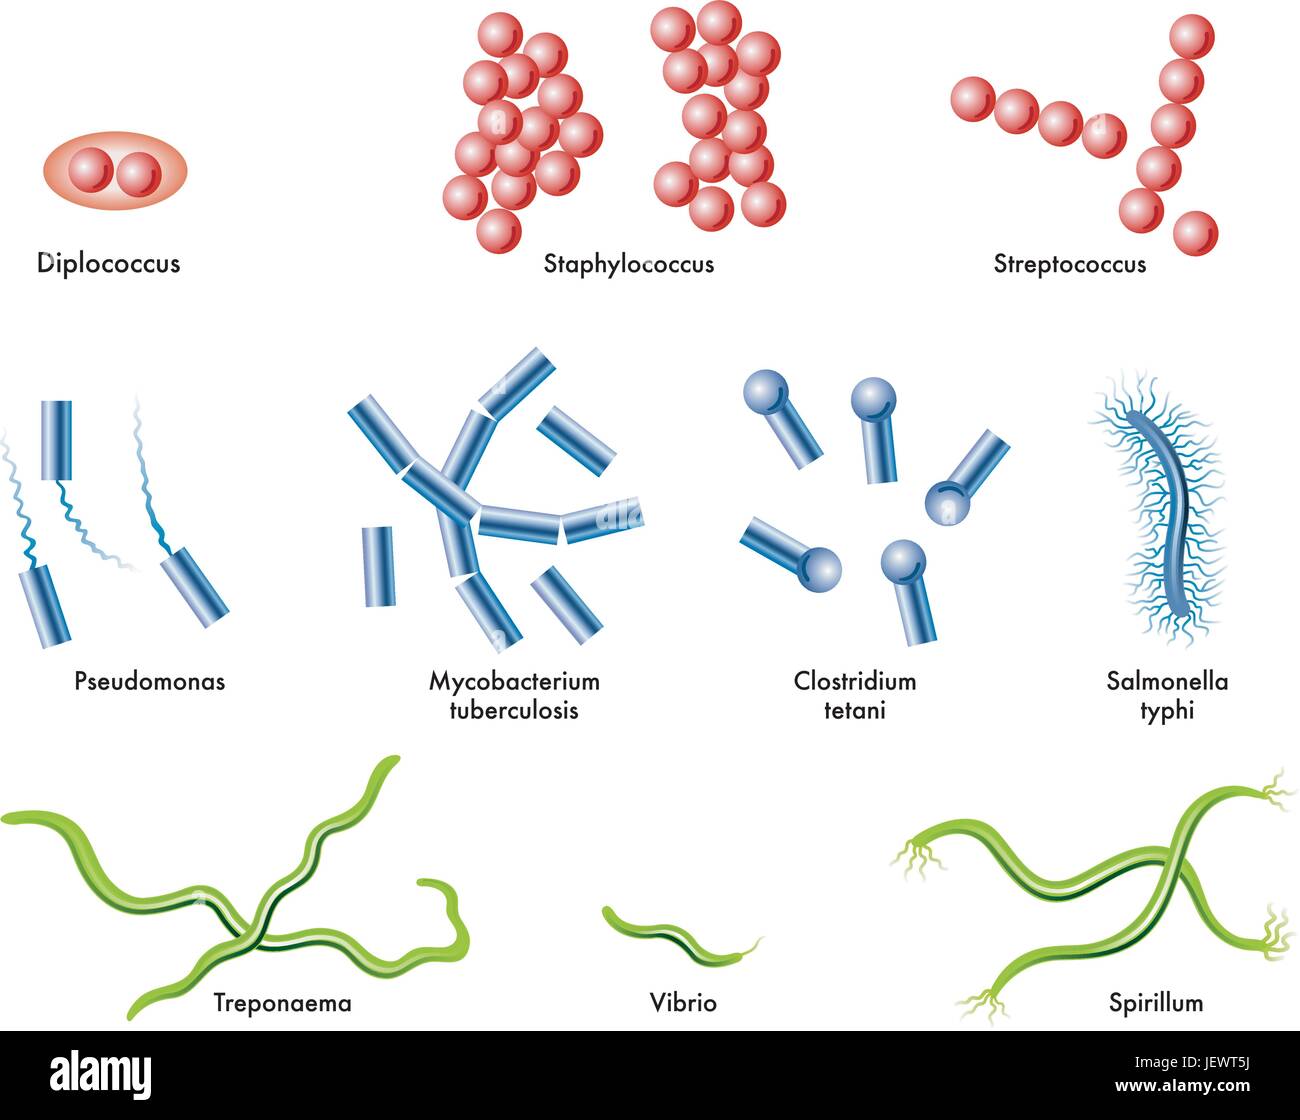 diplococcus bacteria